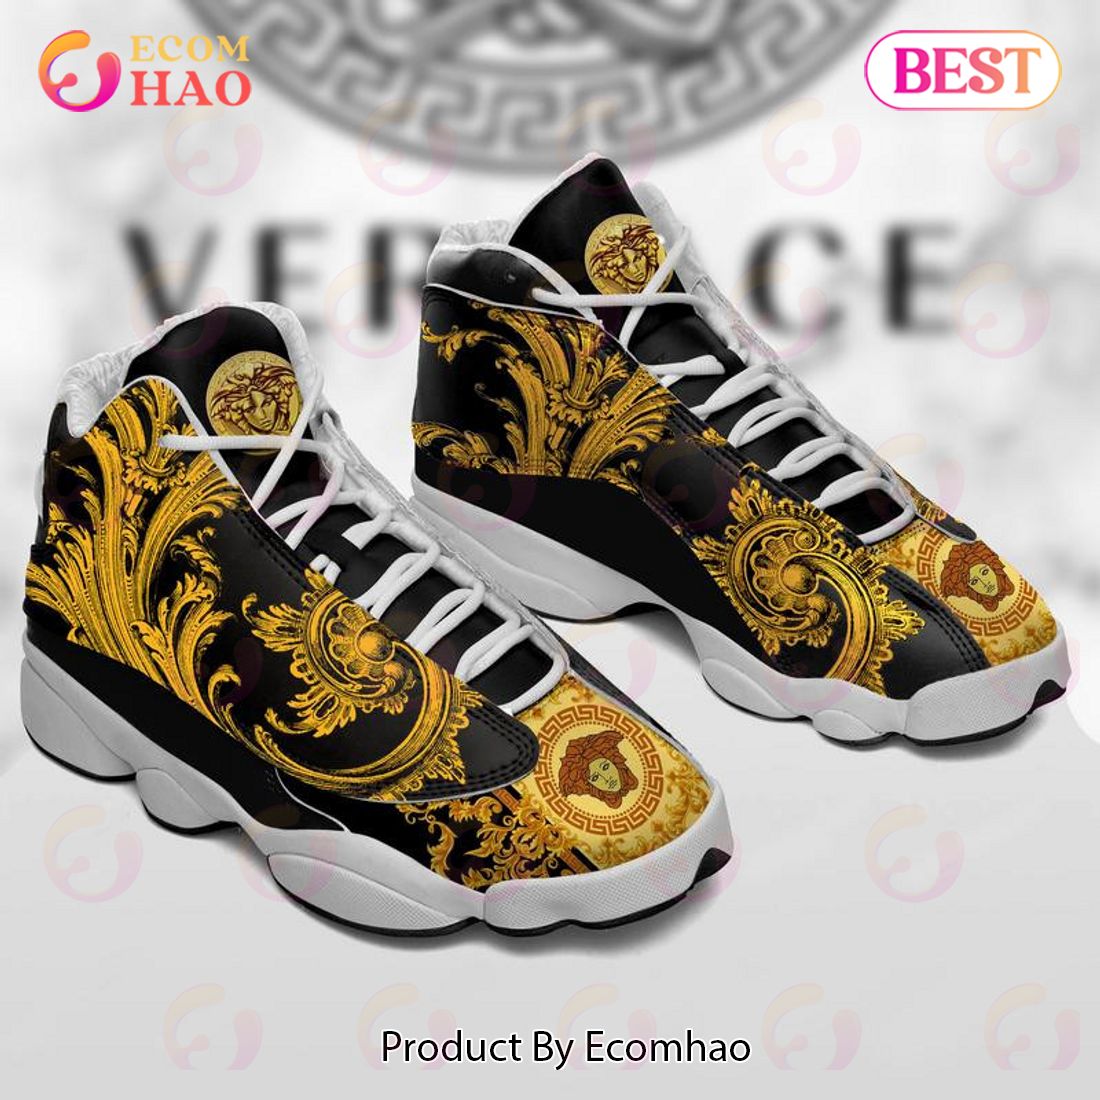 Versace Air Jordan 13 Black Gold VS Shoes, Sneakers